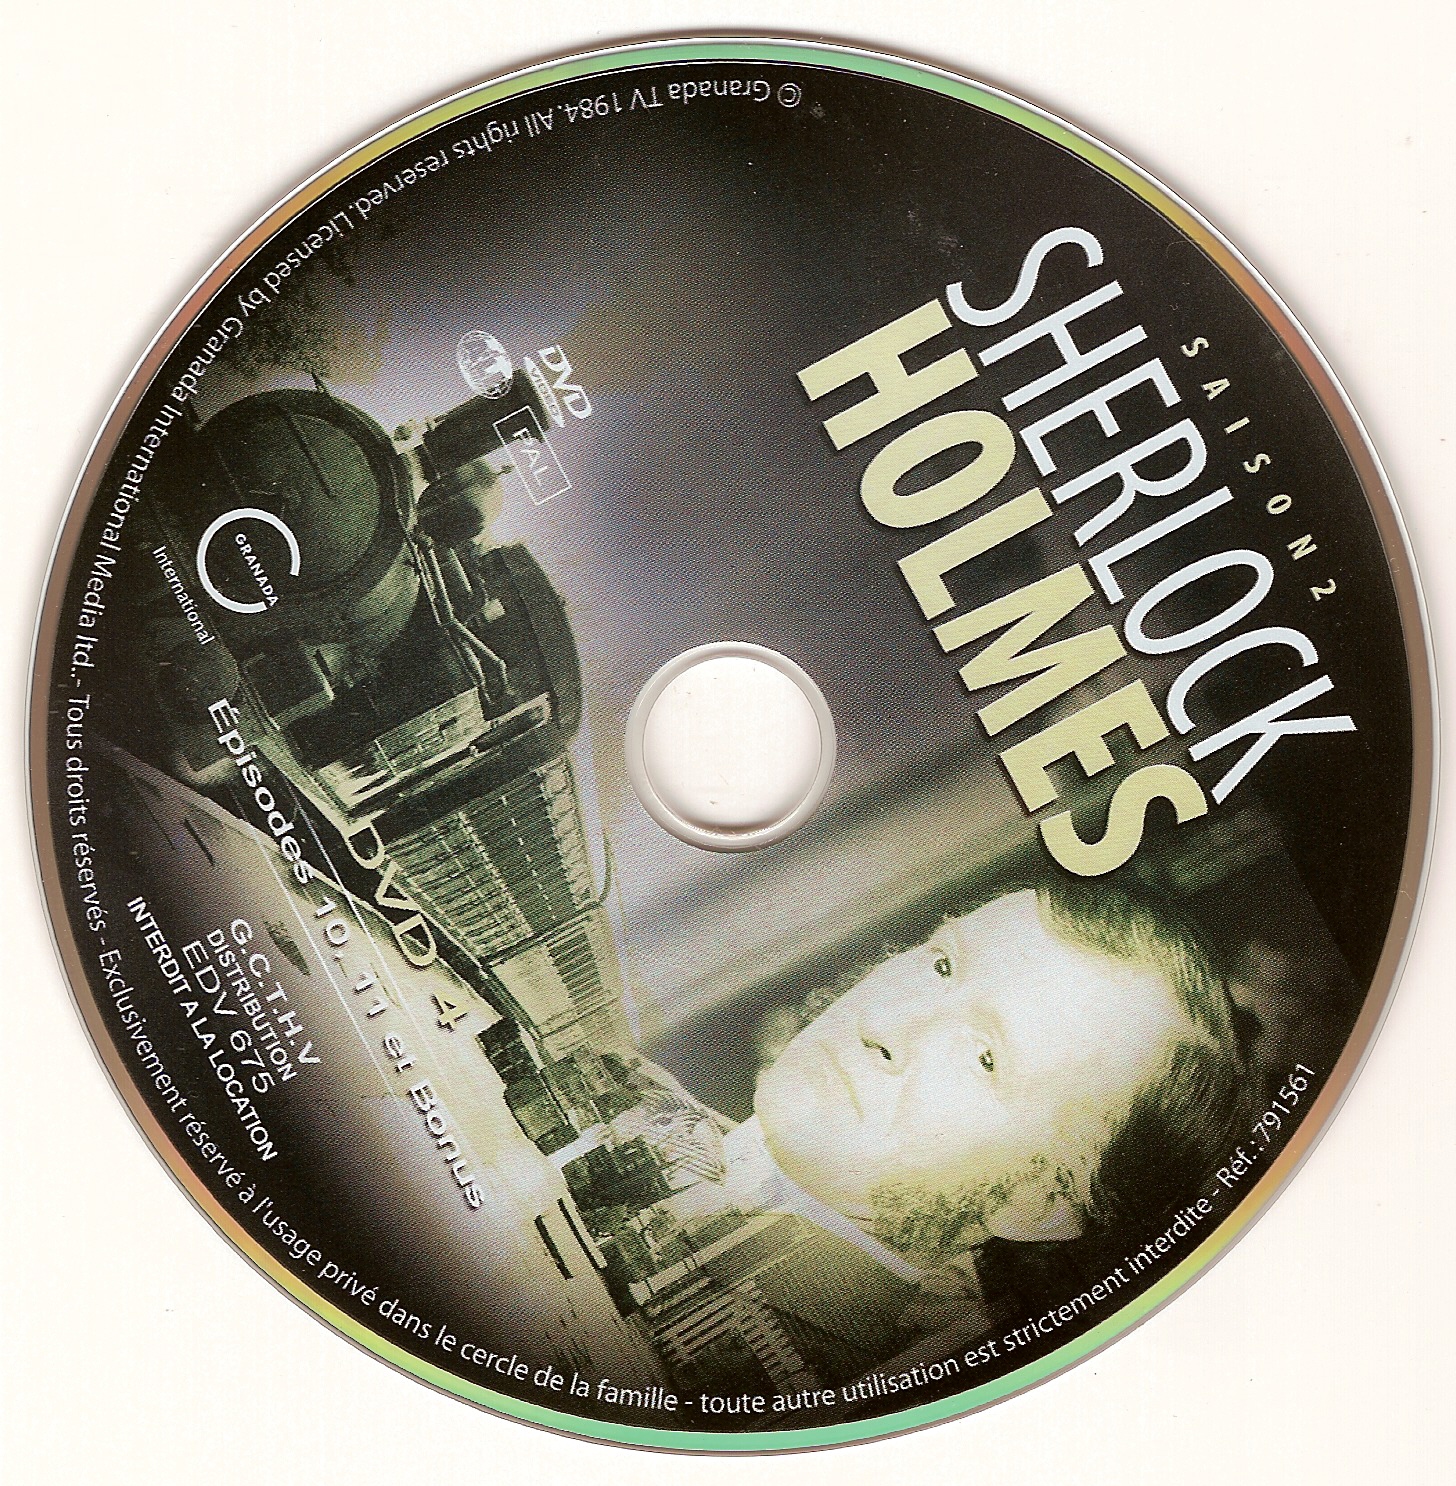 Sherlock Holmes Saison 2 DISC 4